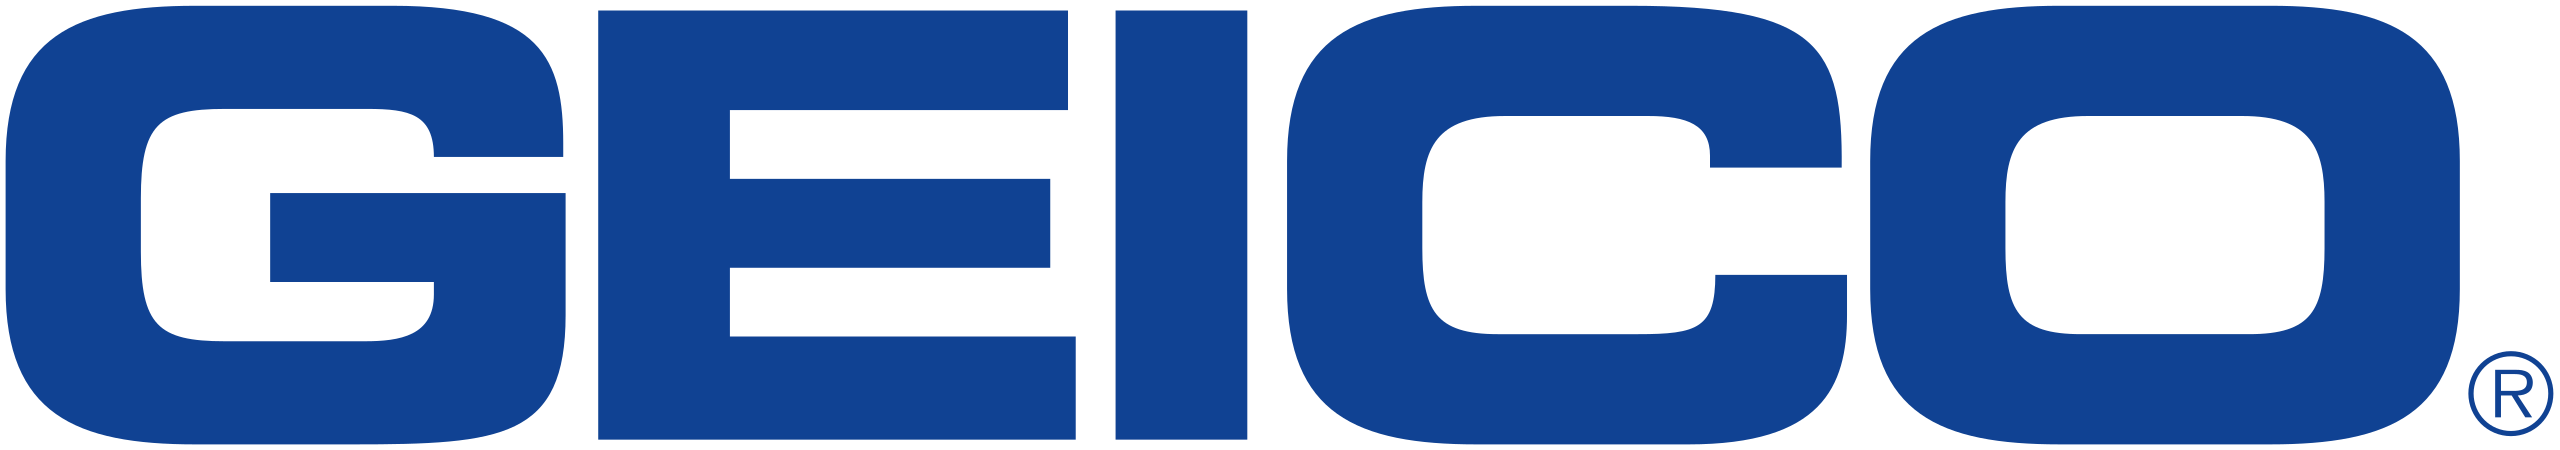 GEICO Logo Transparent Image